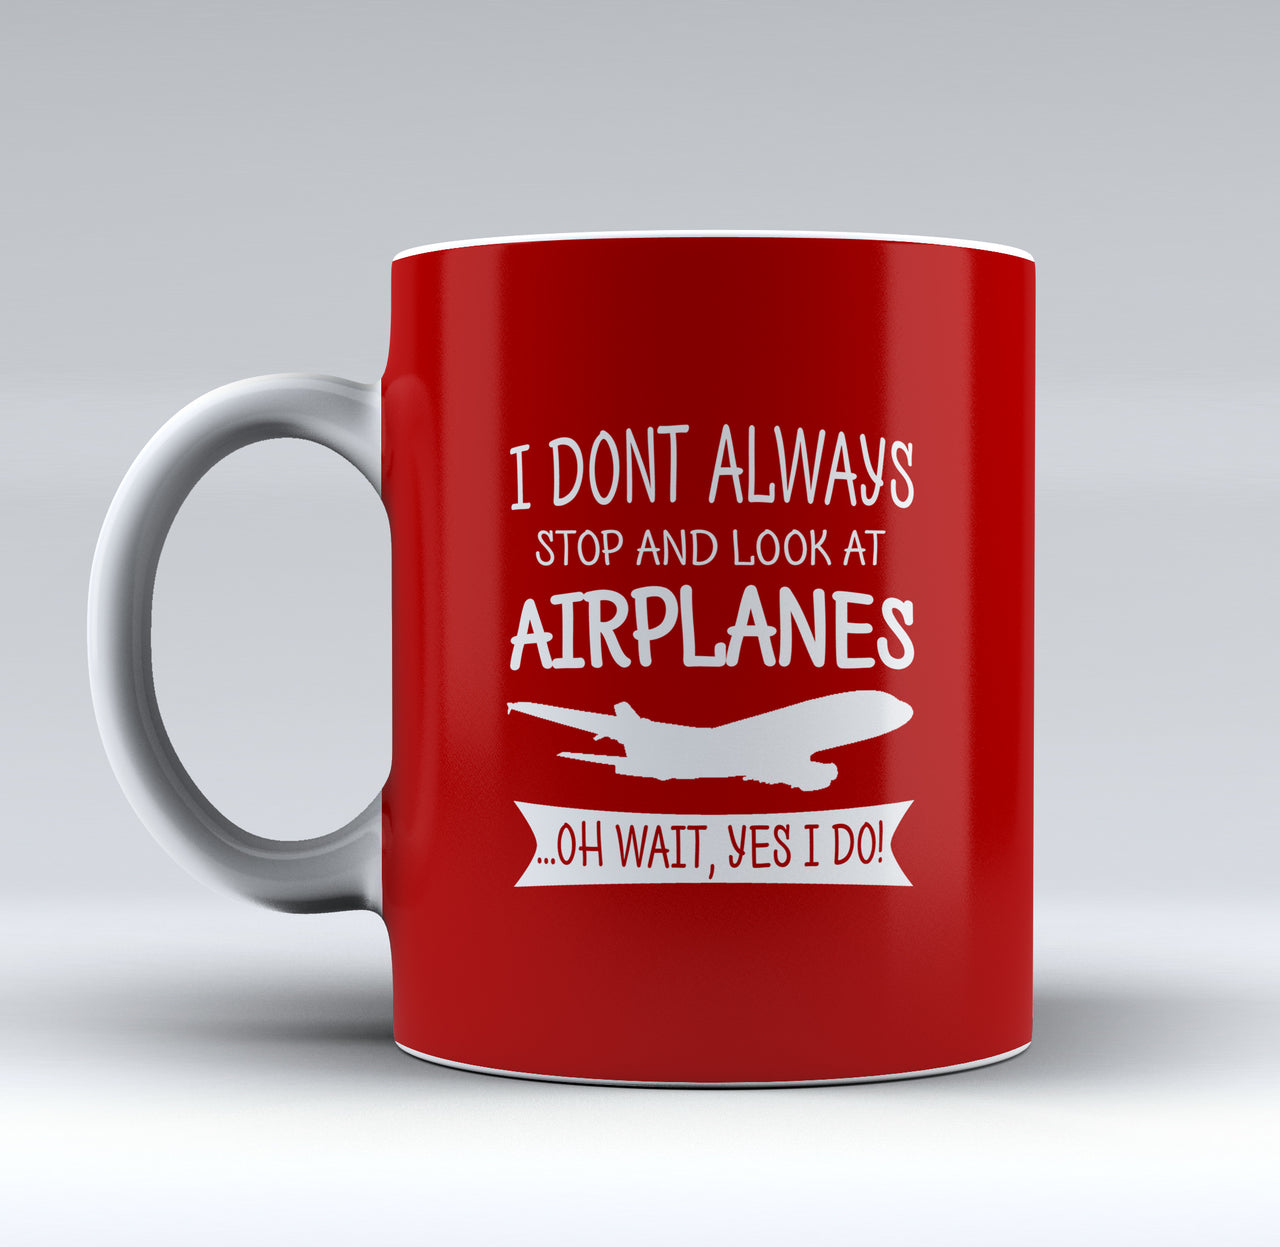 Look at Airplanes - Mug